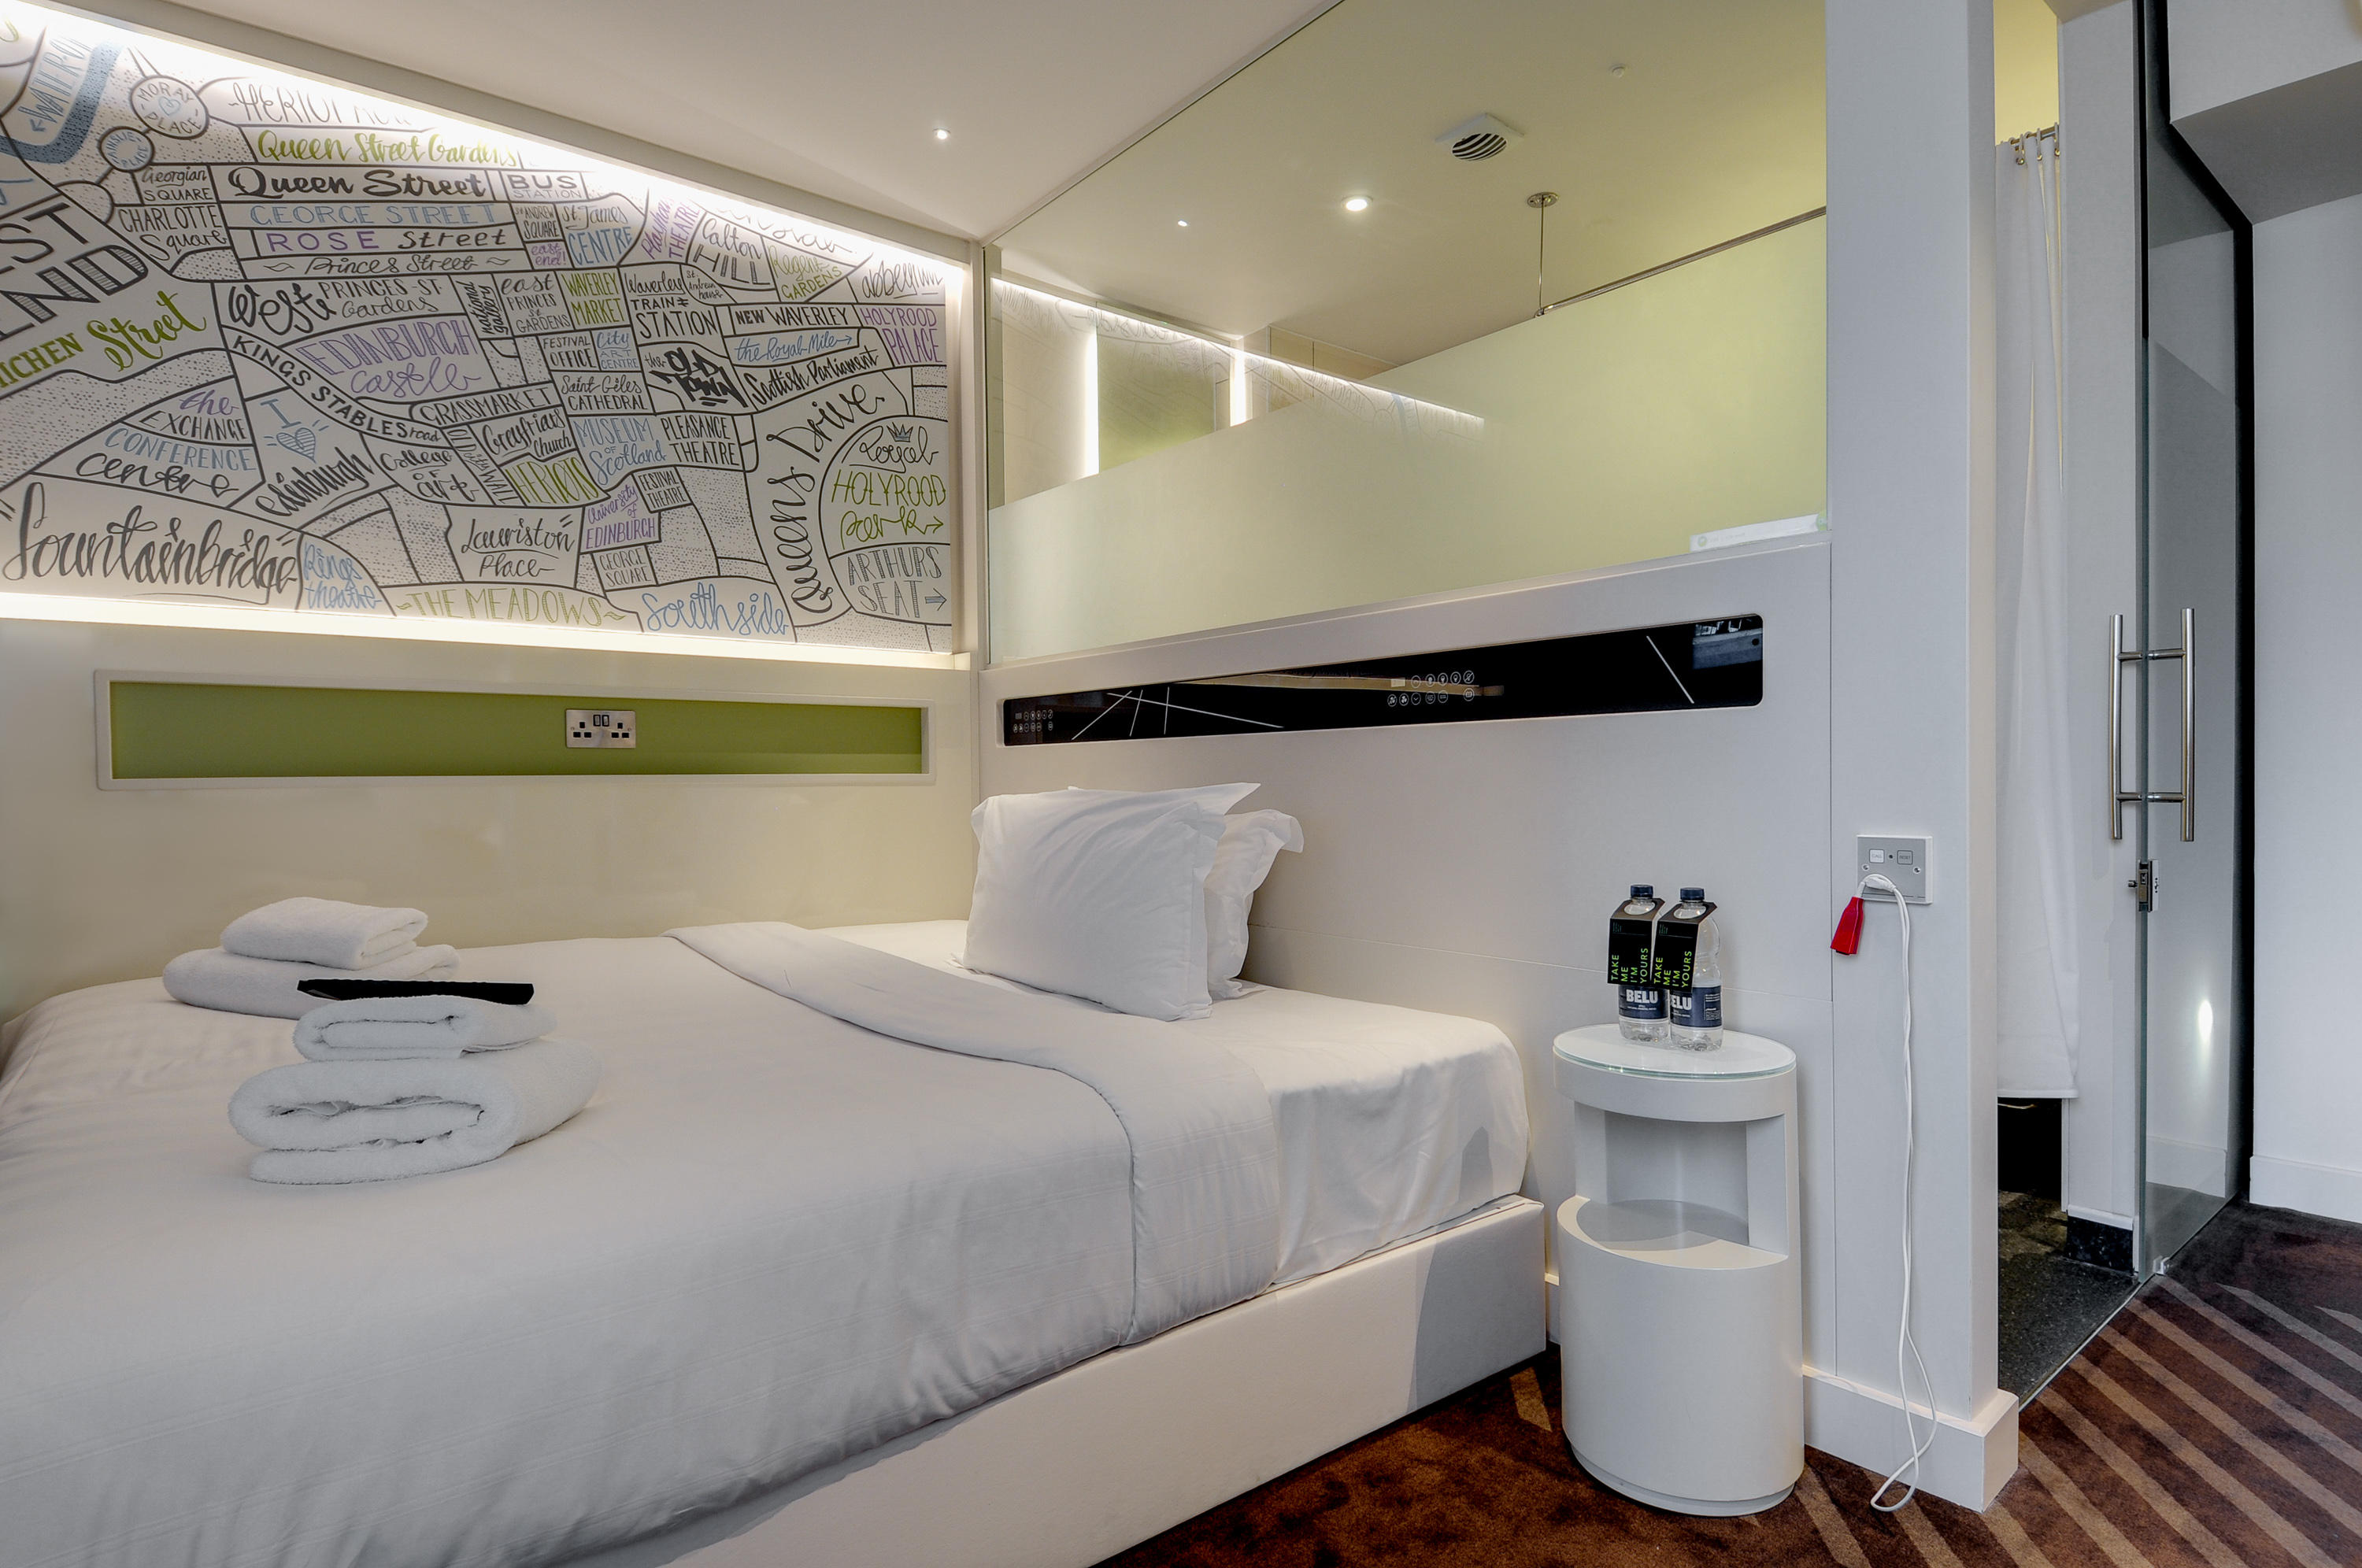 hub by Premier Inn room hub by Premier Inn London Covent Garden hotel London 03333 213104